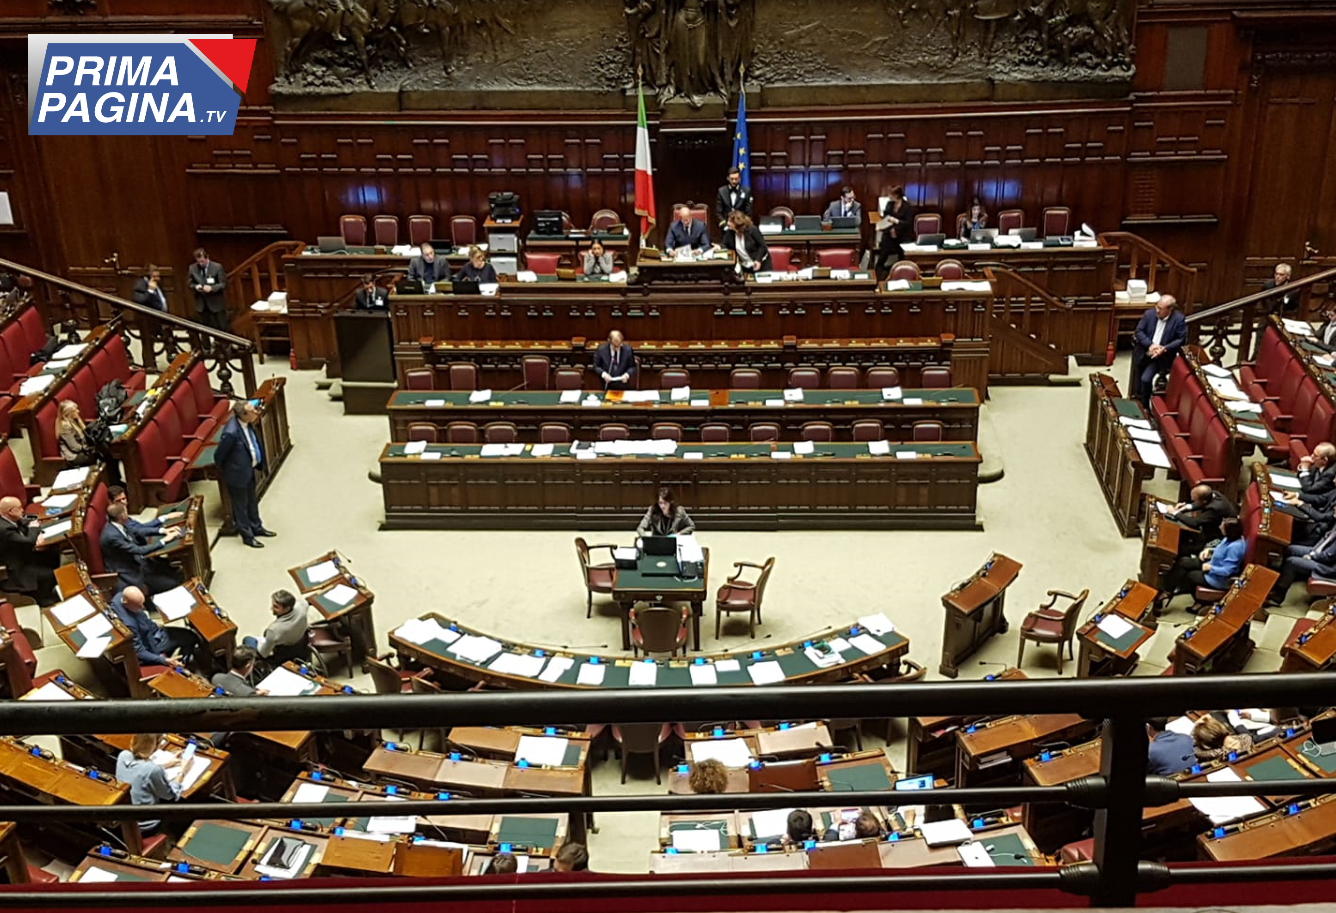 RIFORMA GIUSTIZIA Il governo pone la fiducia alla Camera sulla riforma Cartabia. 40 grillini non votano e fanno infuriare Conte 